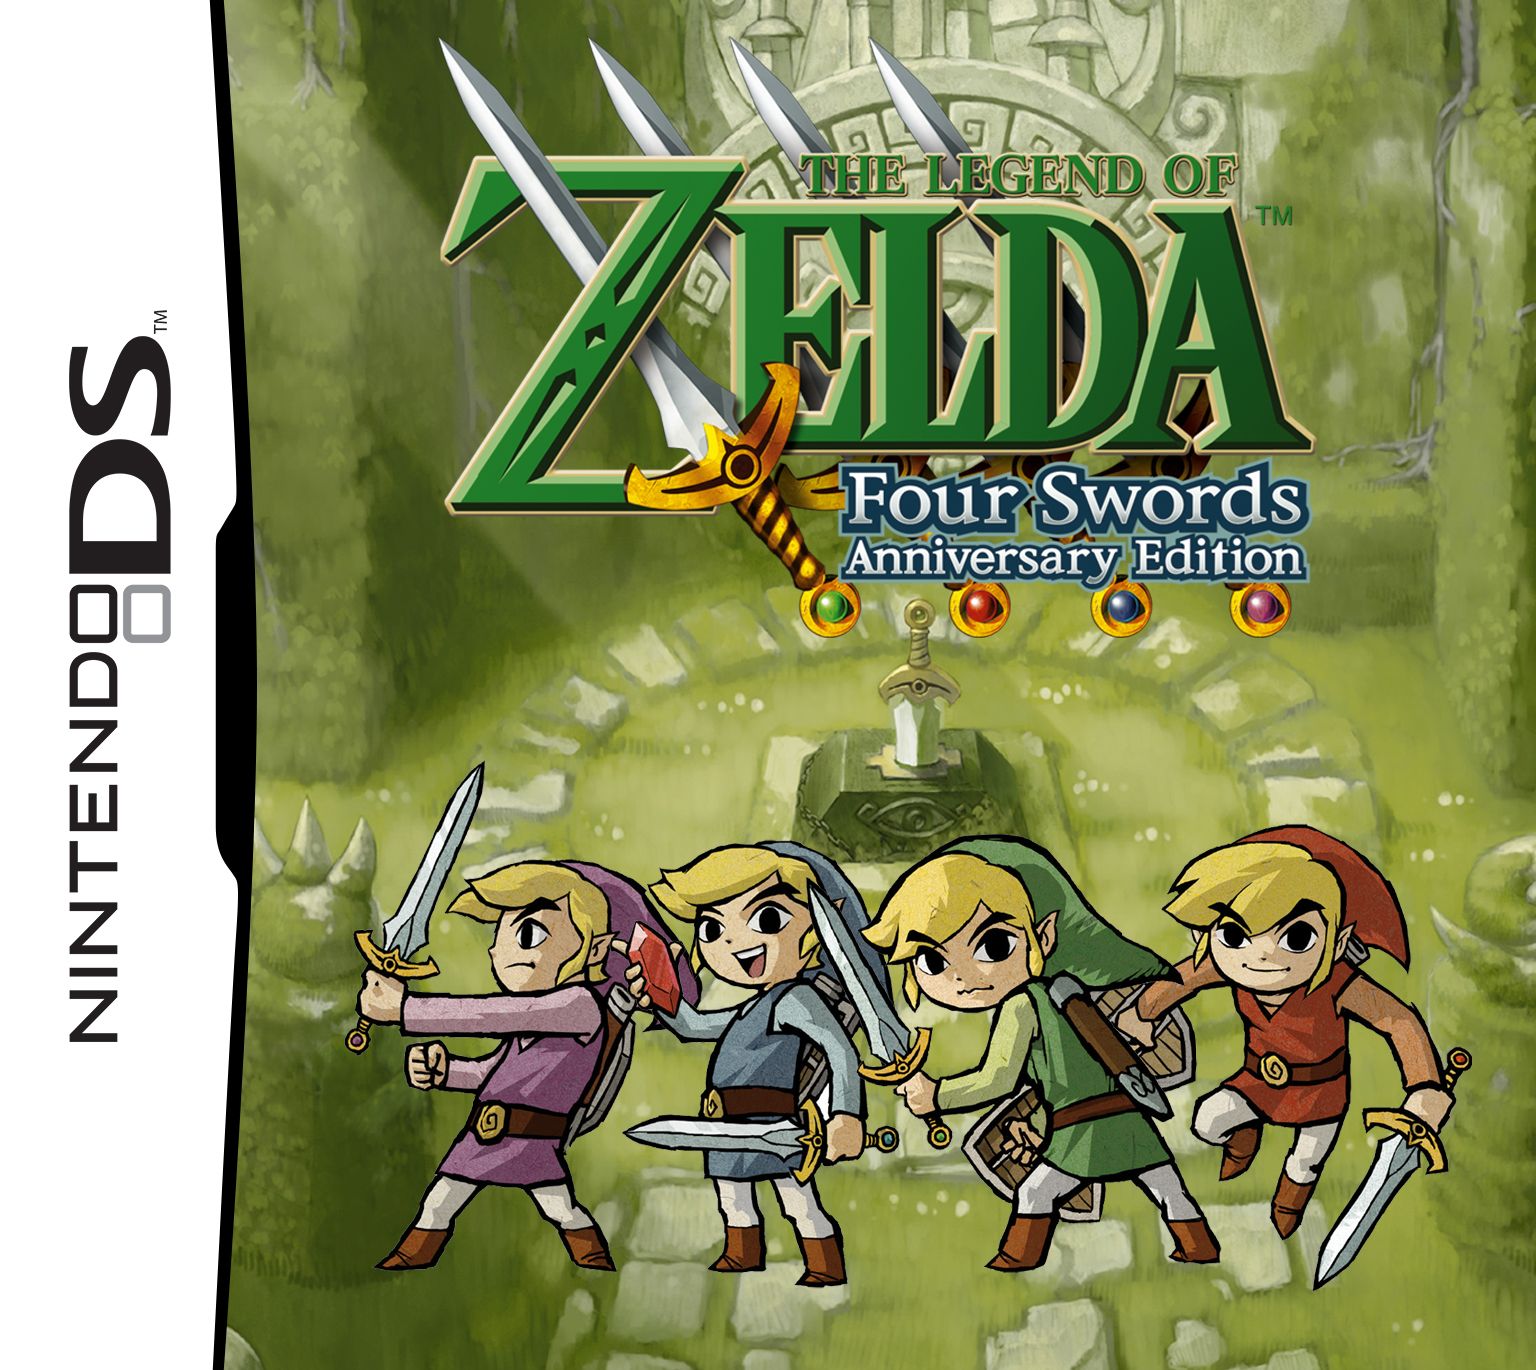 jaquette du jeu vidéo The Legend of Zelda: Four Swords Adventures